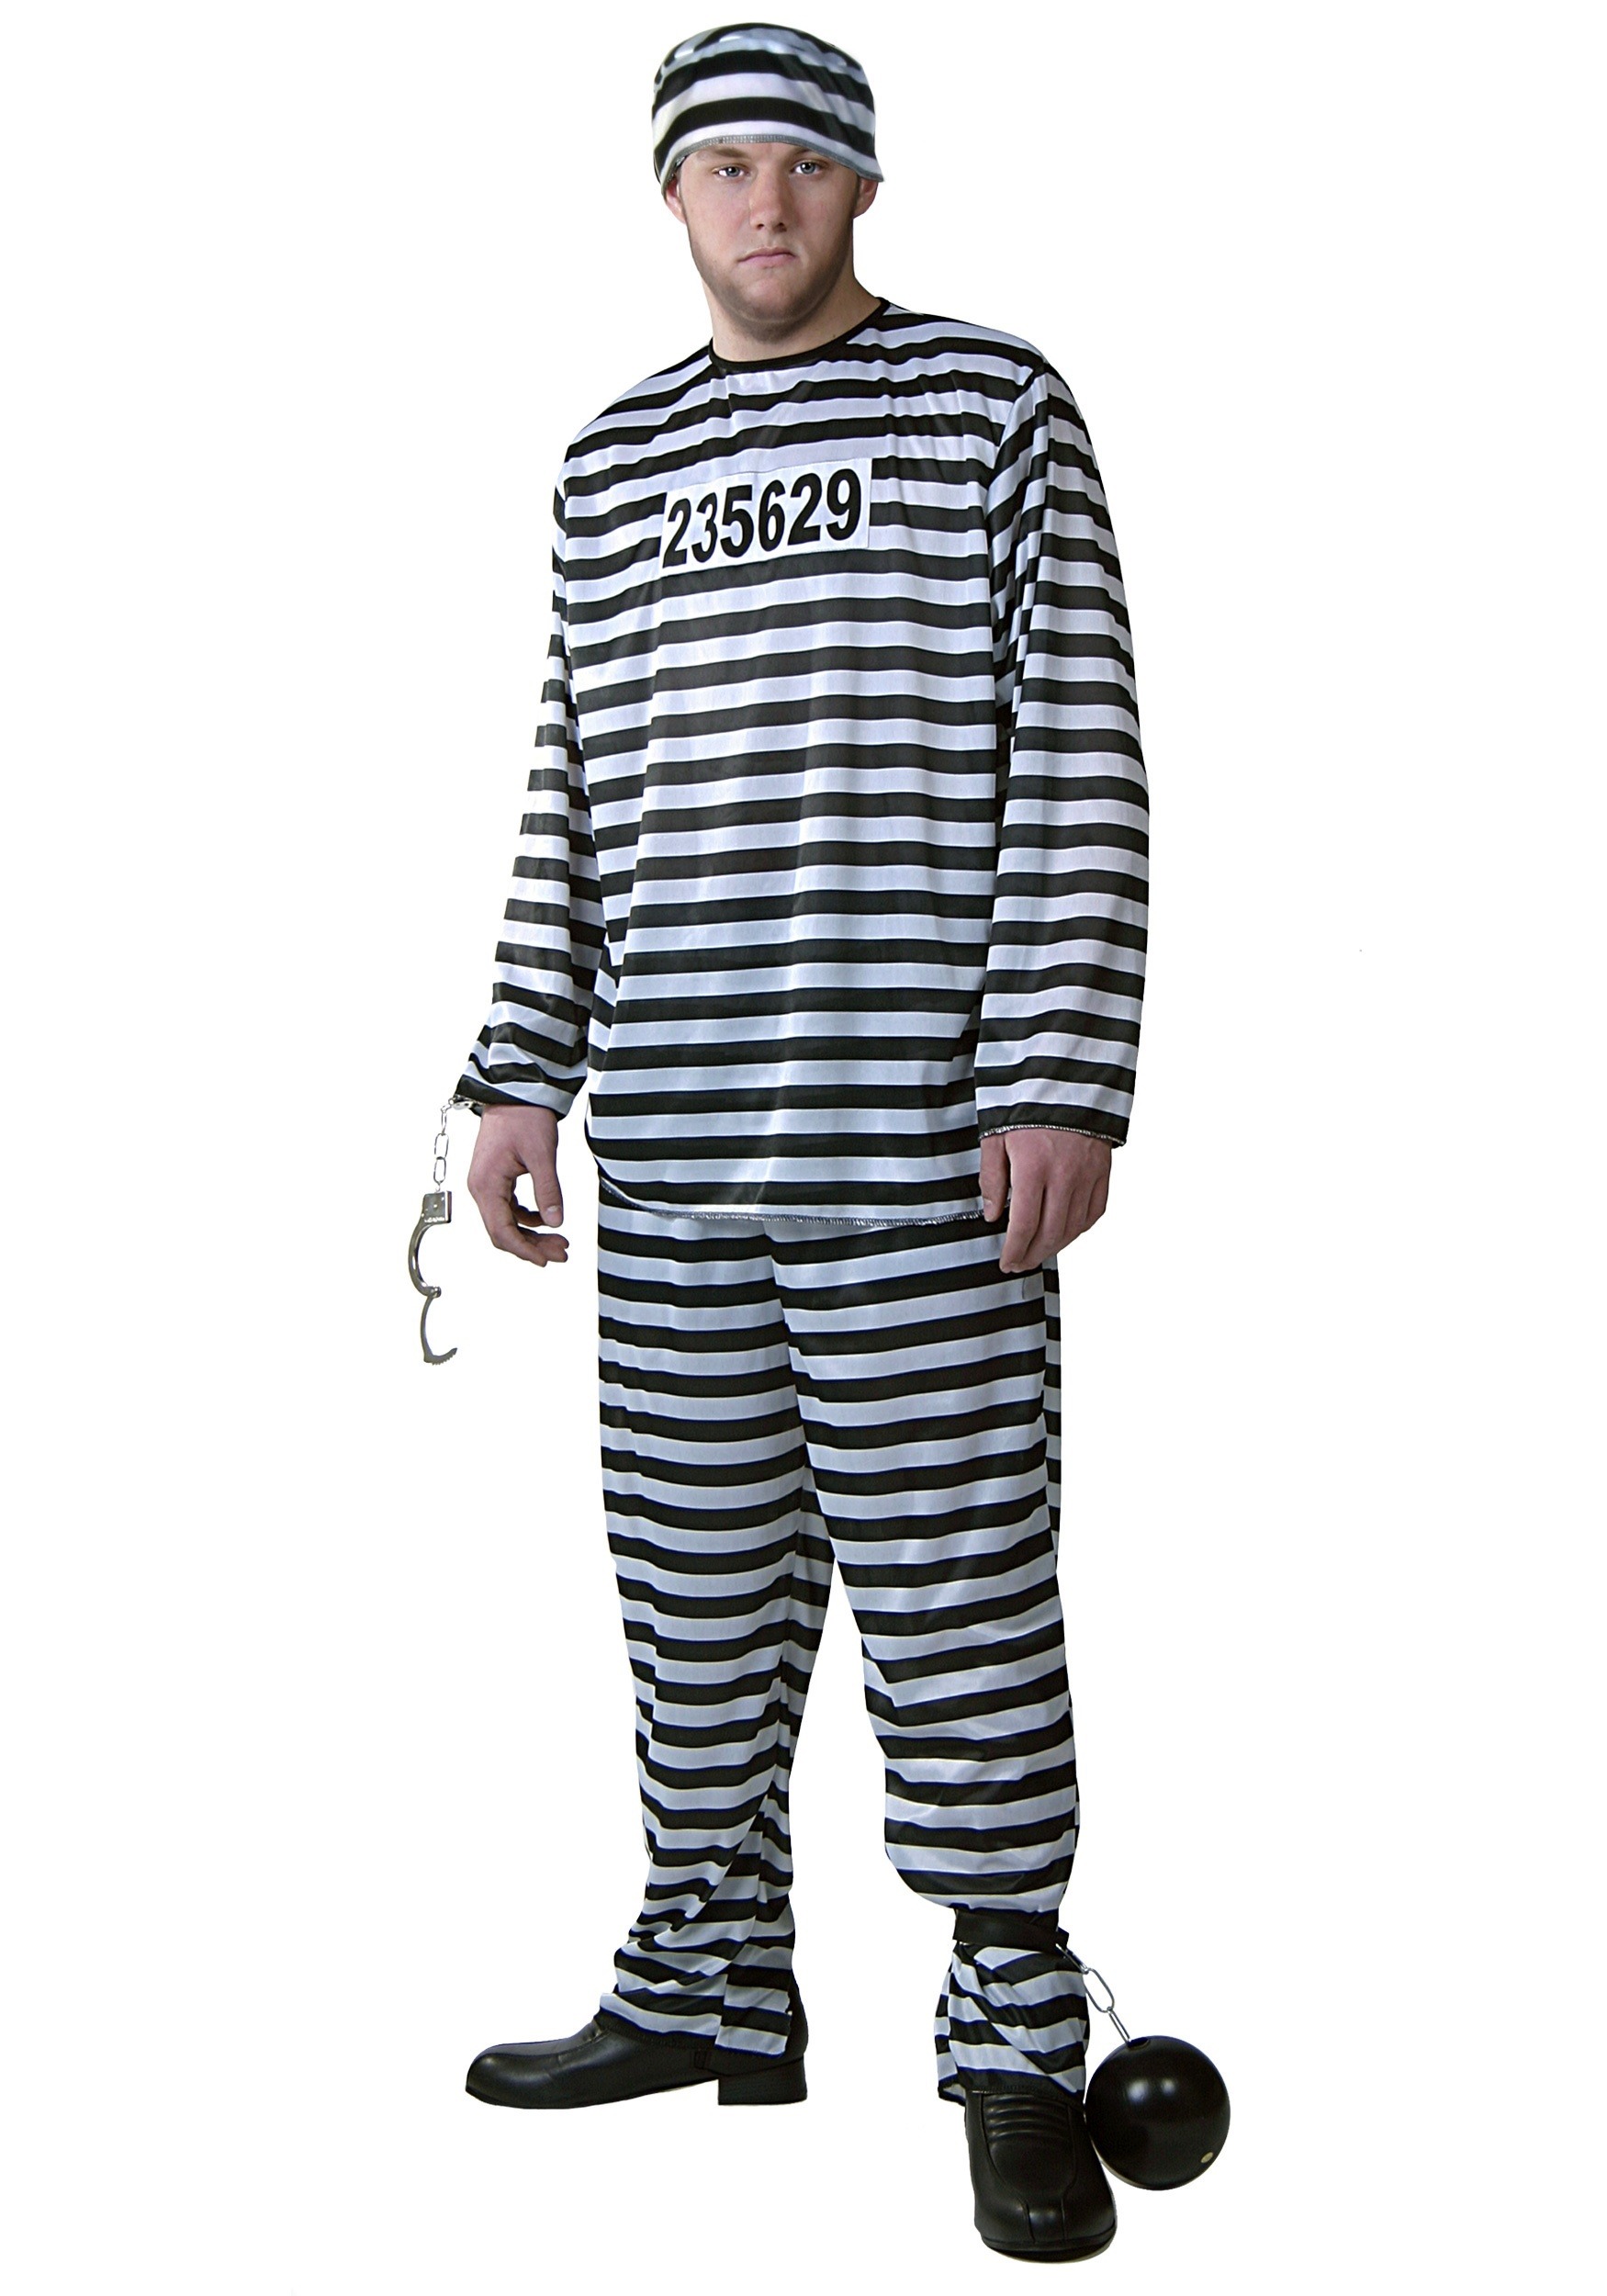 Prisoner Costume for Men